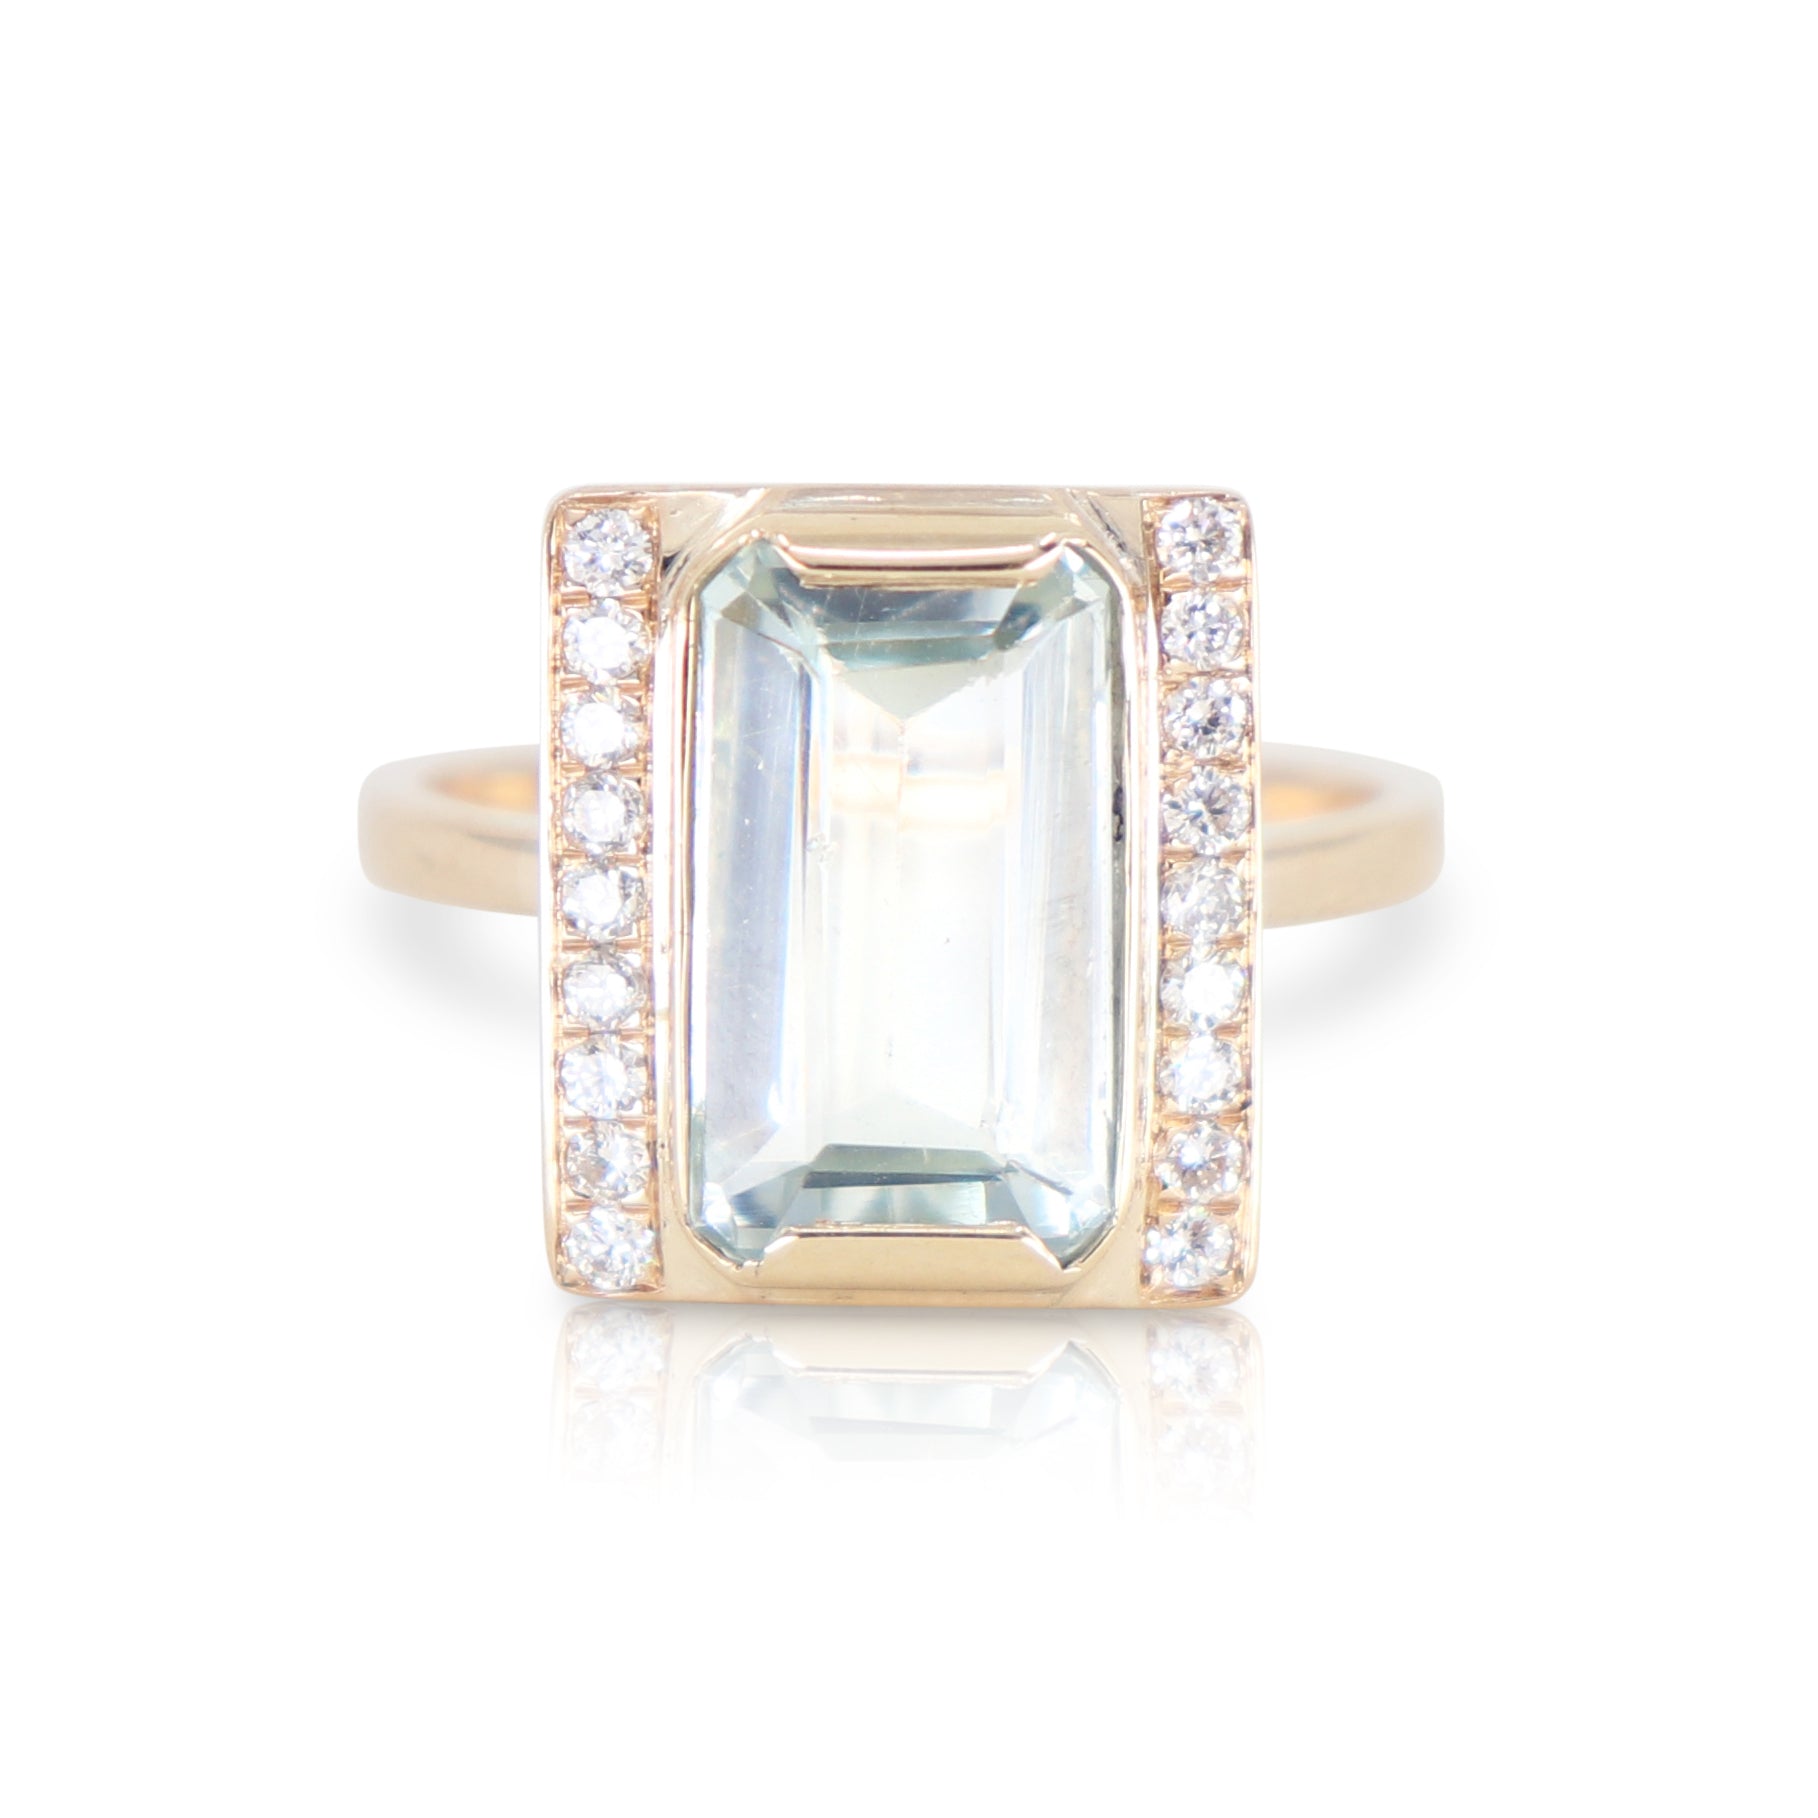 Aquamarine and diamond baguette ring